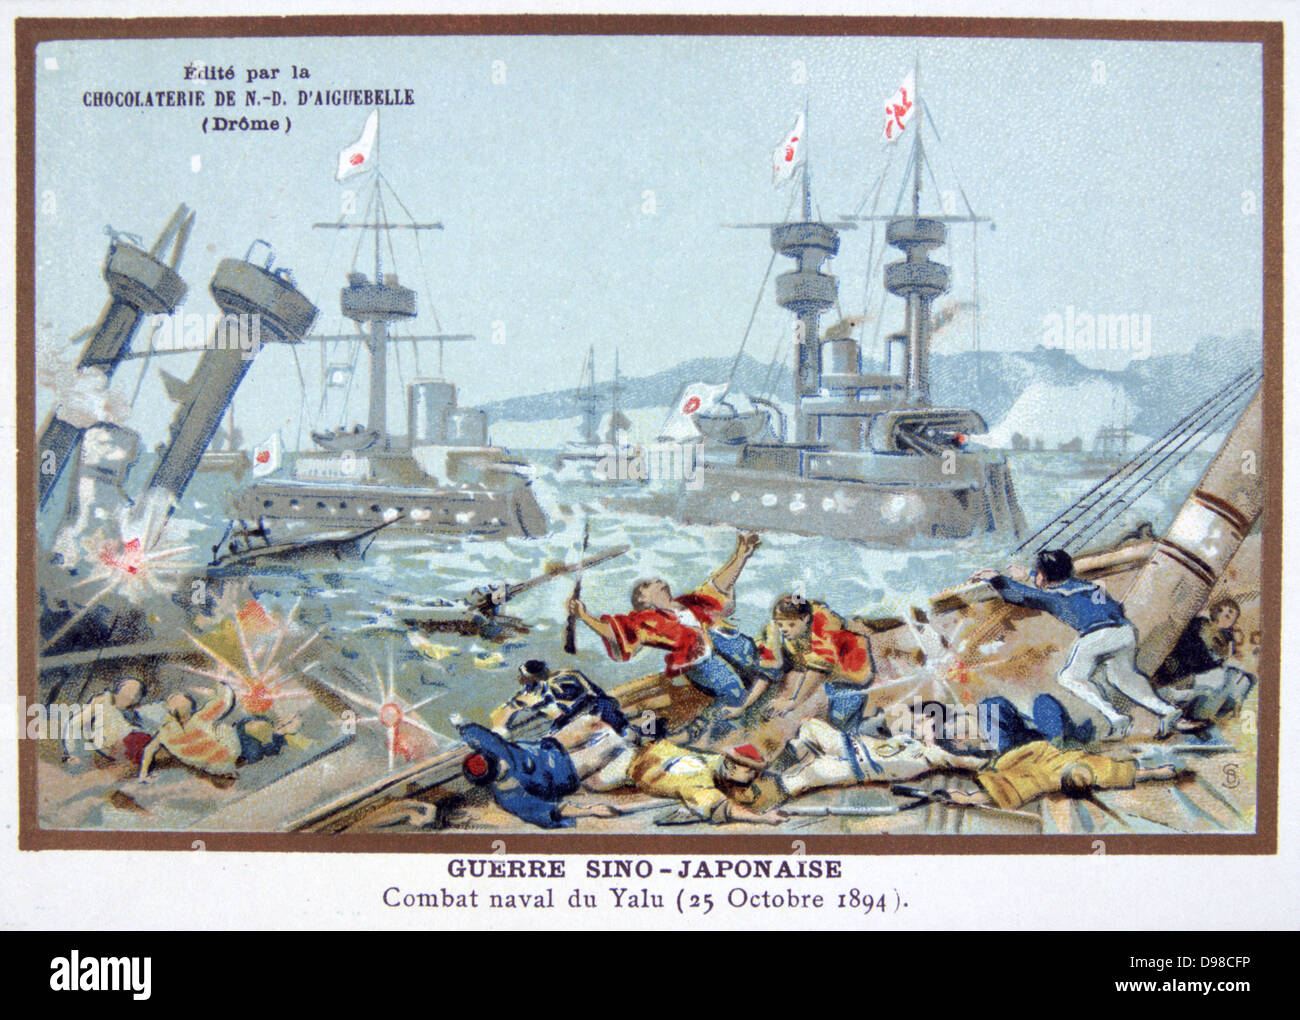 Première guerre sino-japonaise, 1894 : Bataille à l'embouchure du Yalou, la Rover 17 septembre 1894, entre les Japonais et Chinois marines. La flotte chinoise a été accablé par des Japonais. Chromolithographie c1900. Banque D'Images